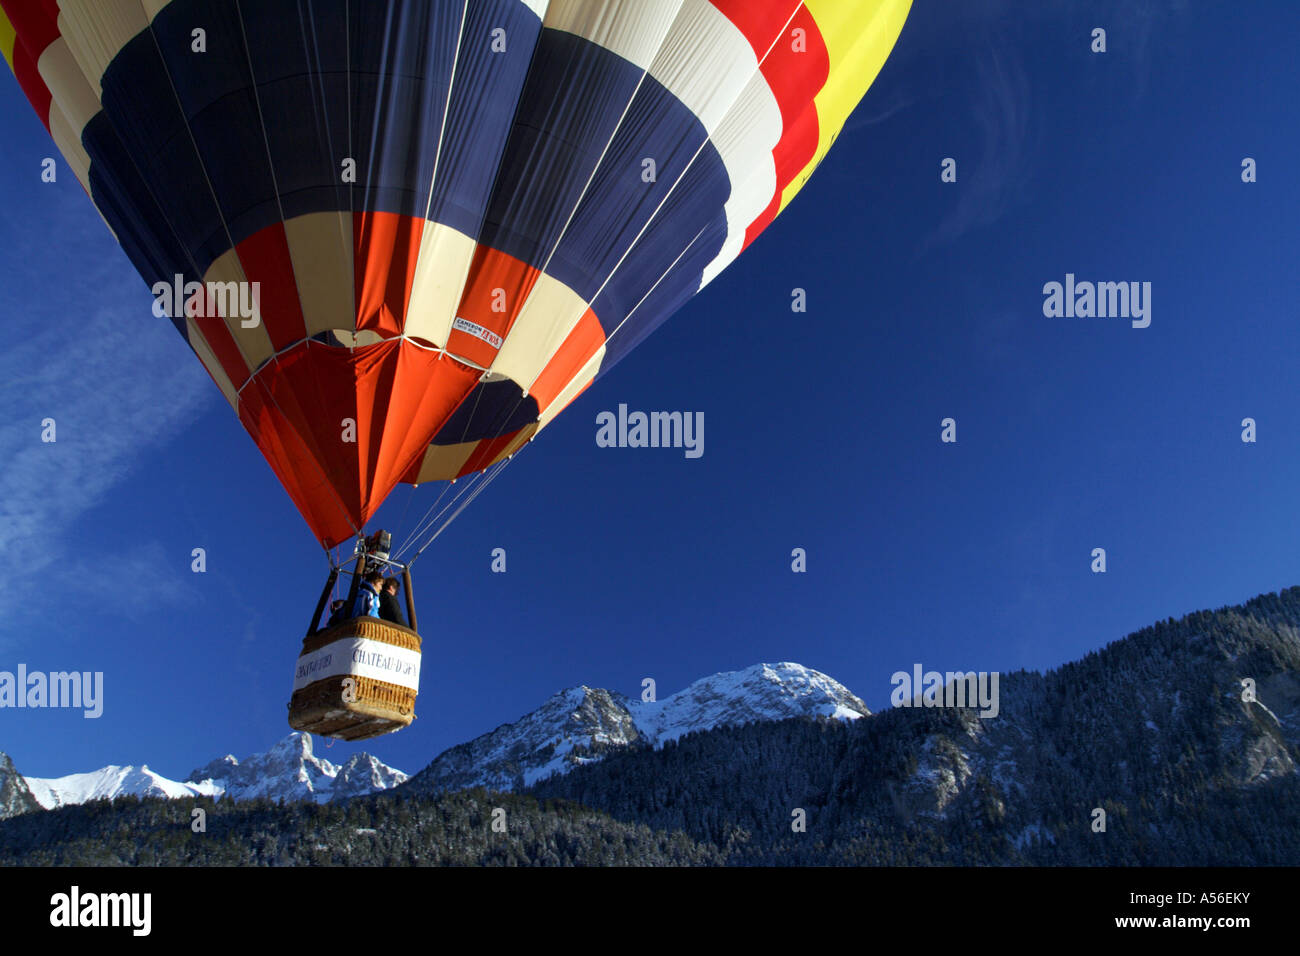 Heißluftballonfestival im Chateau-d’Oex, Schweizer Alpen. Schweiz Stockfoto